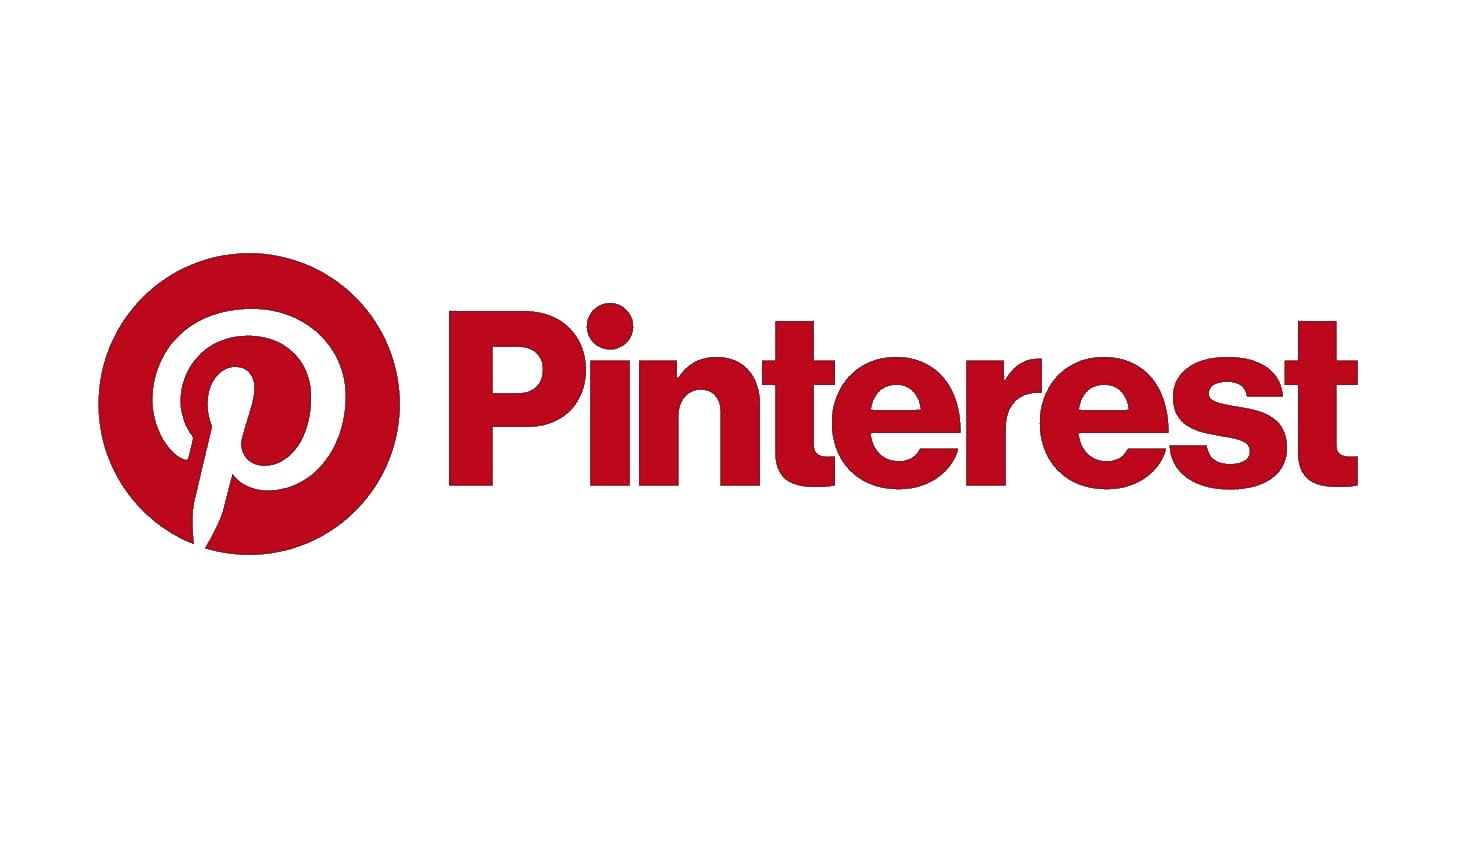 https://1000logos.net/wp-content/uploads/2018/03/Pinterest-logo.jpg